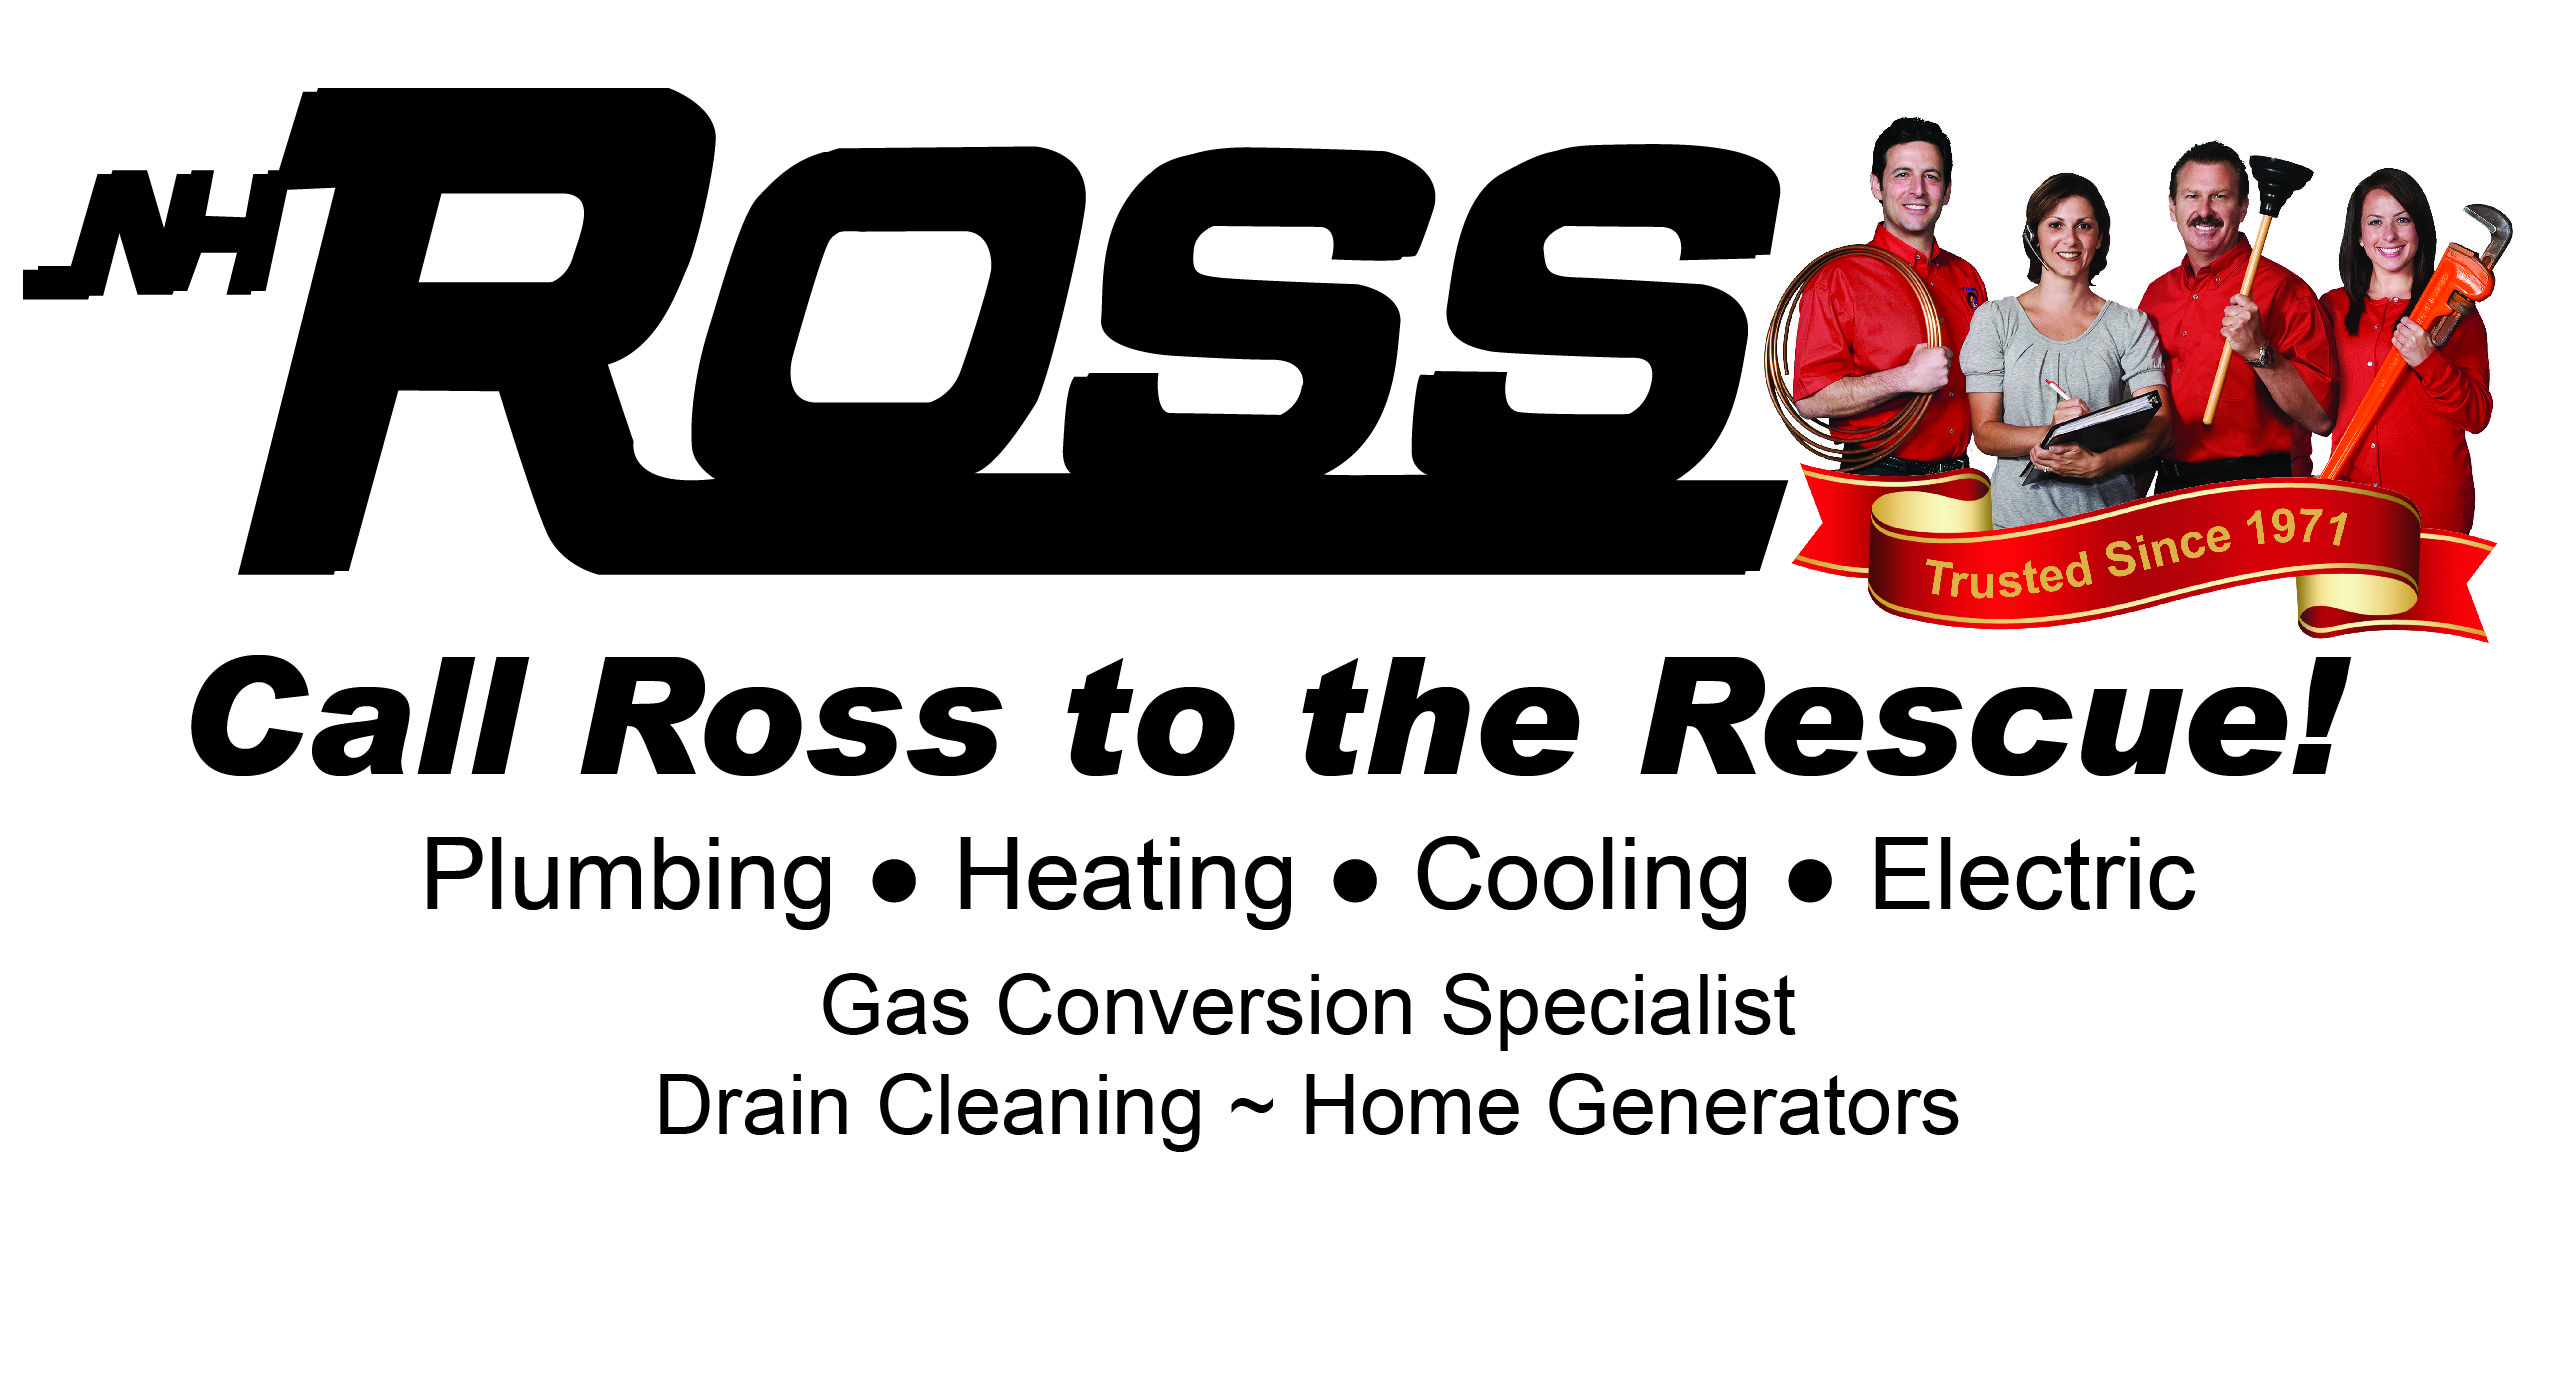 N. H. Ross, Inc. Logo